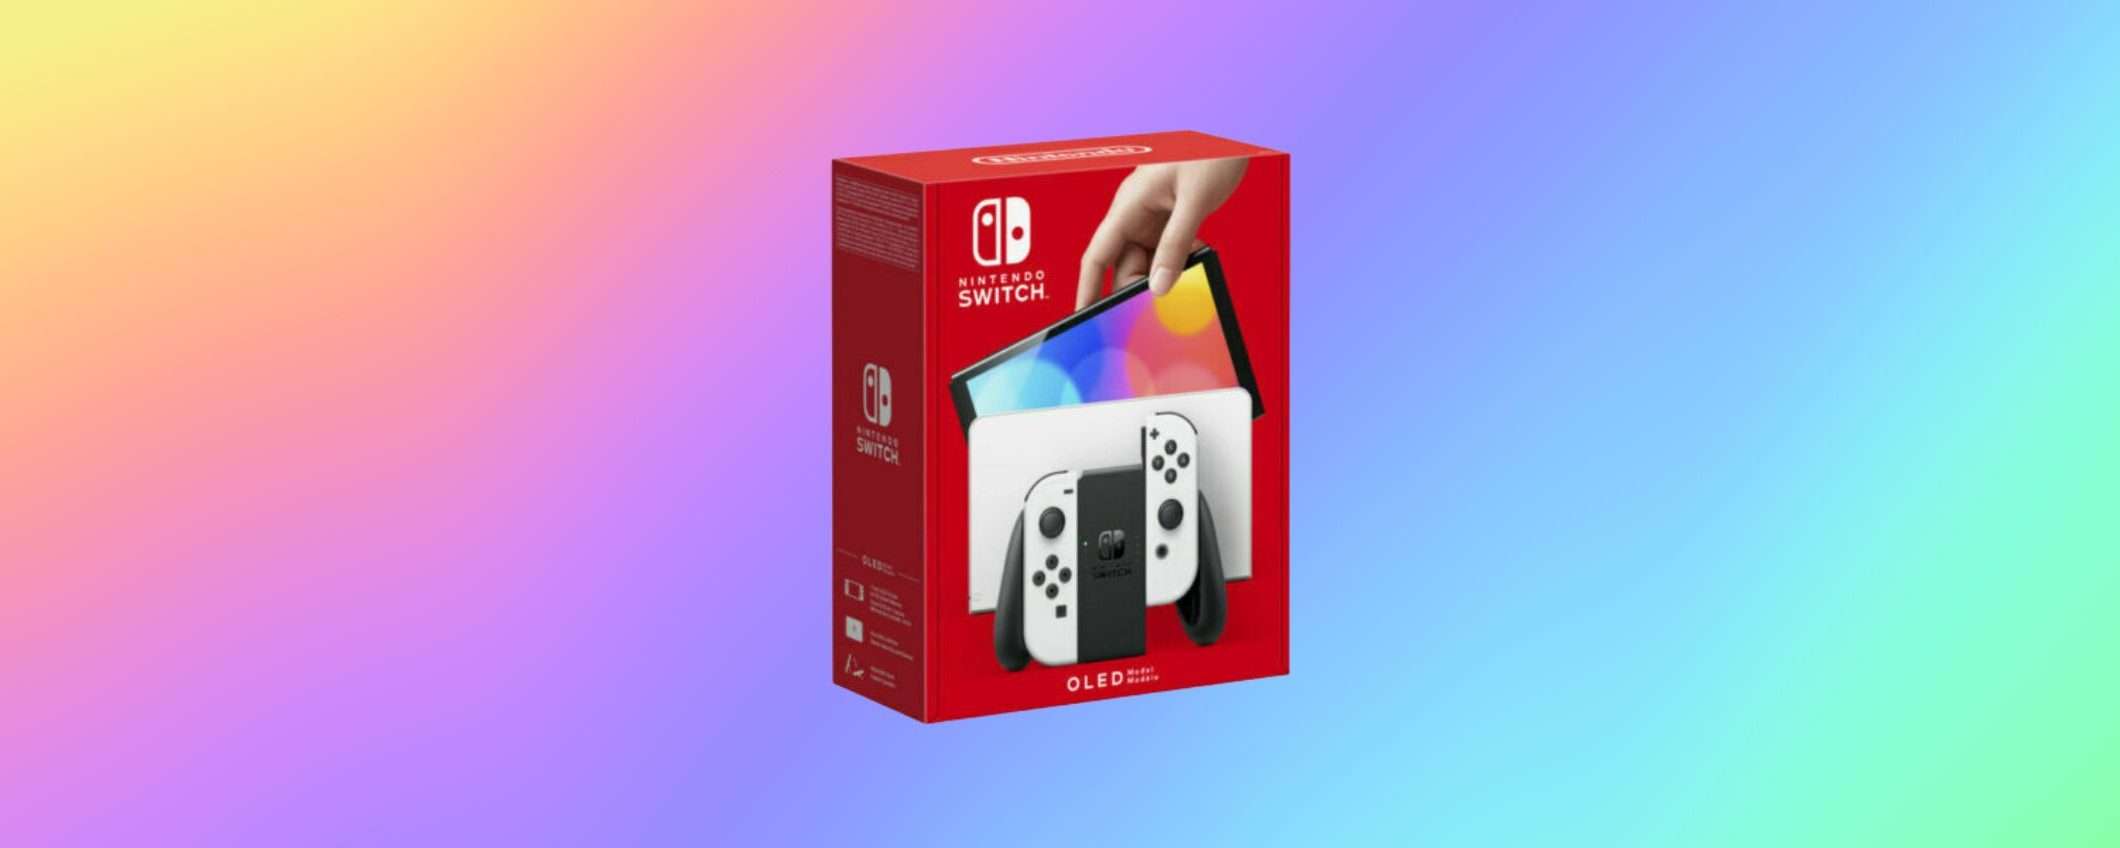 Nintendo Switch OLED bianca ad un SUPER PREZZO eBay, solo per oggi